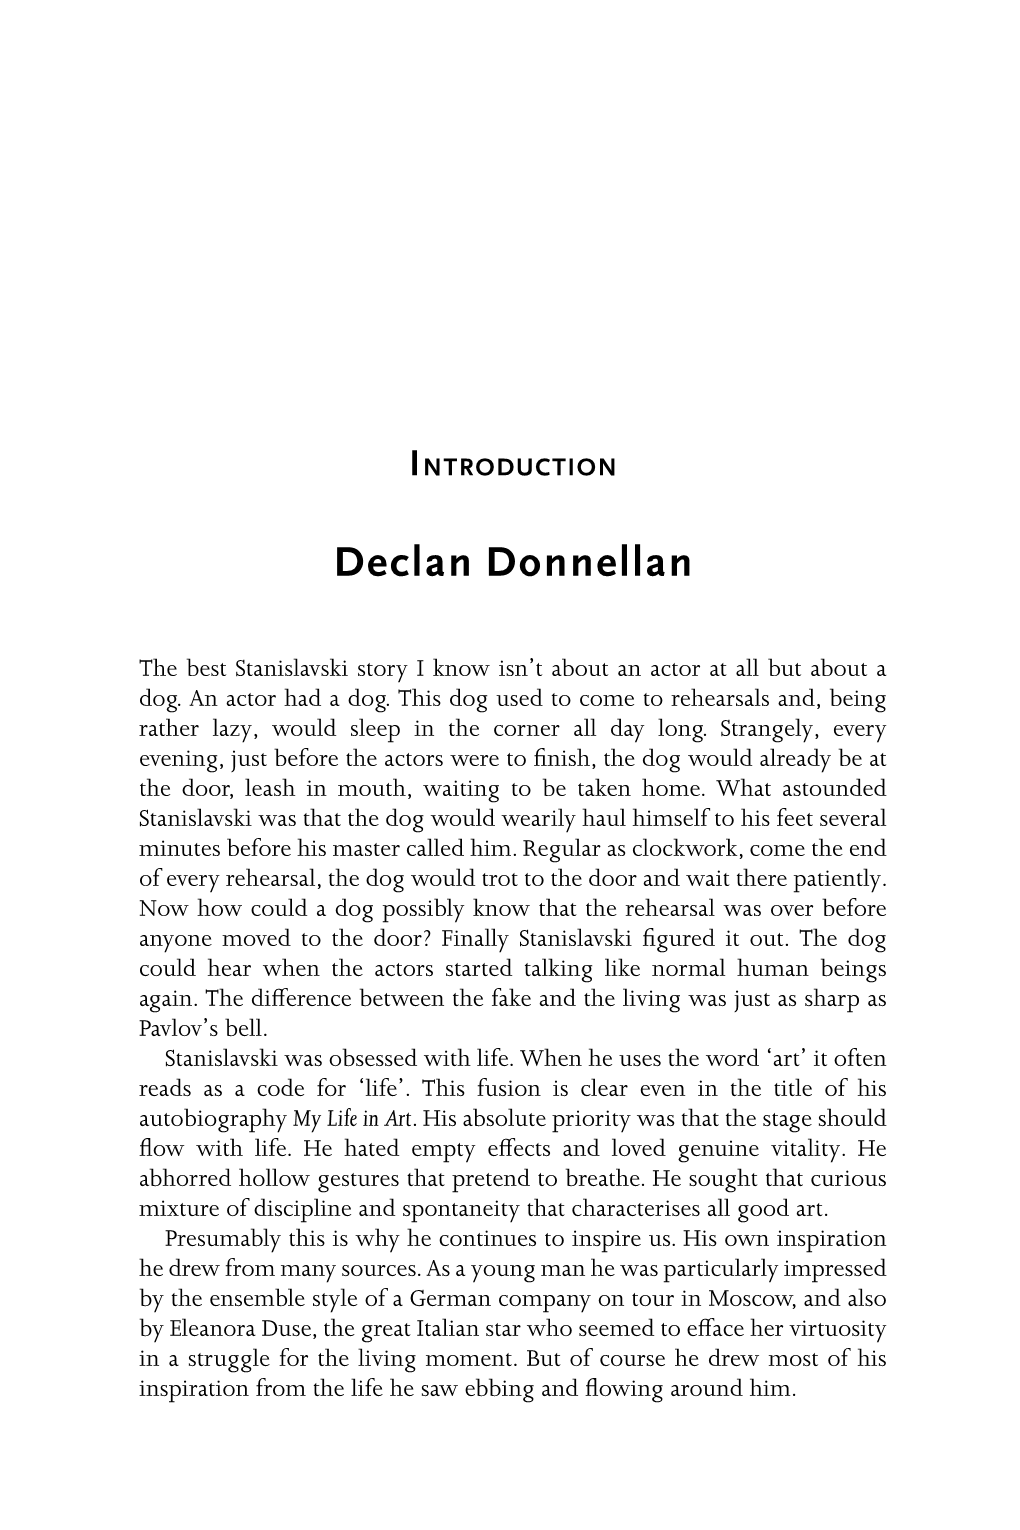 Declan Donnellan